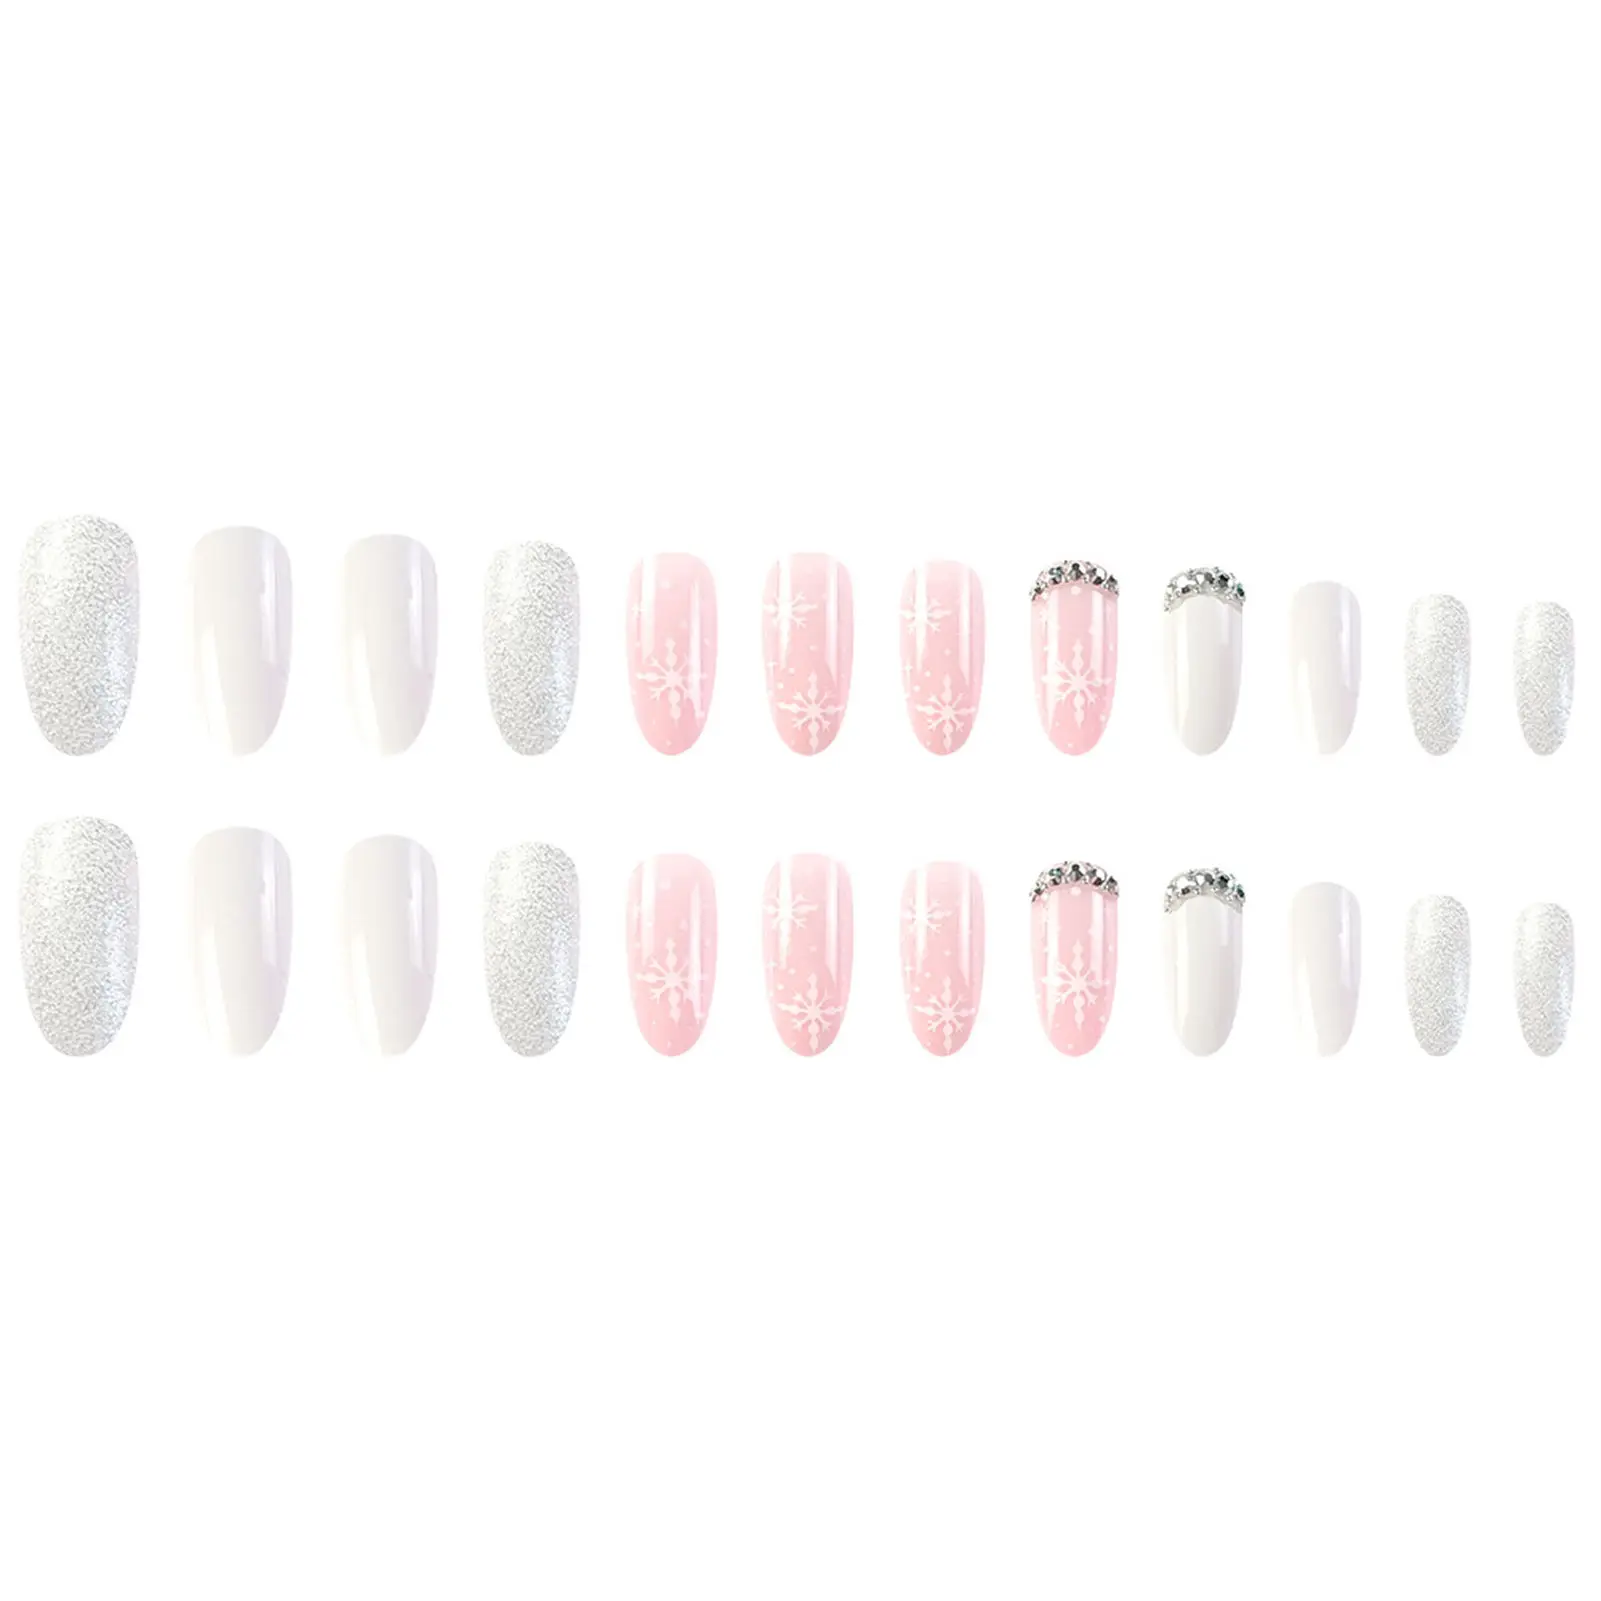 

Розово-белые нажимные ногти со снежинками, накладные ногти с защитой от пятен для женщин и девушек, маникюрный салон